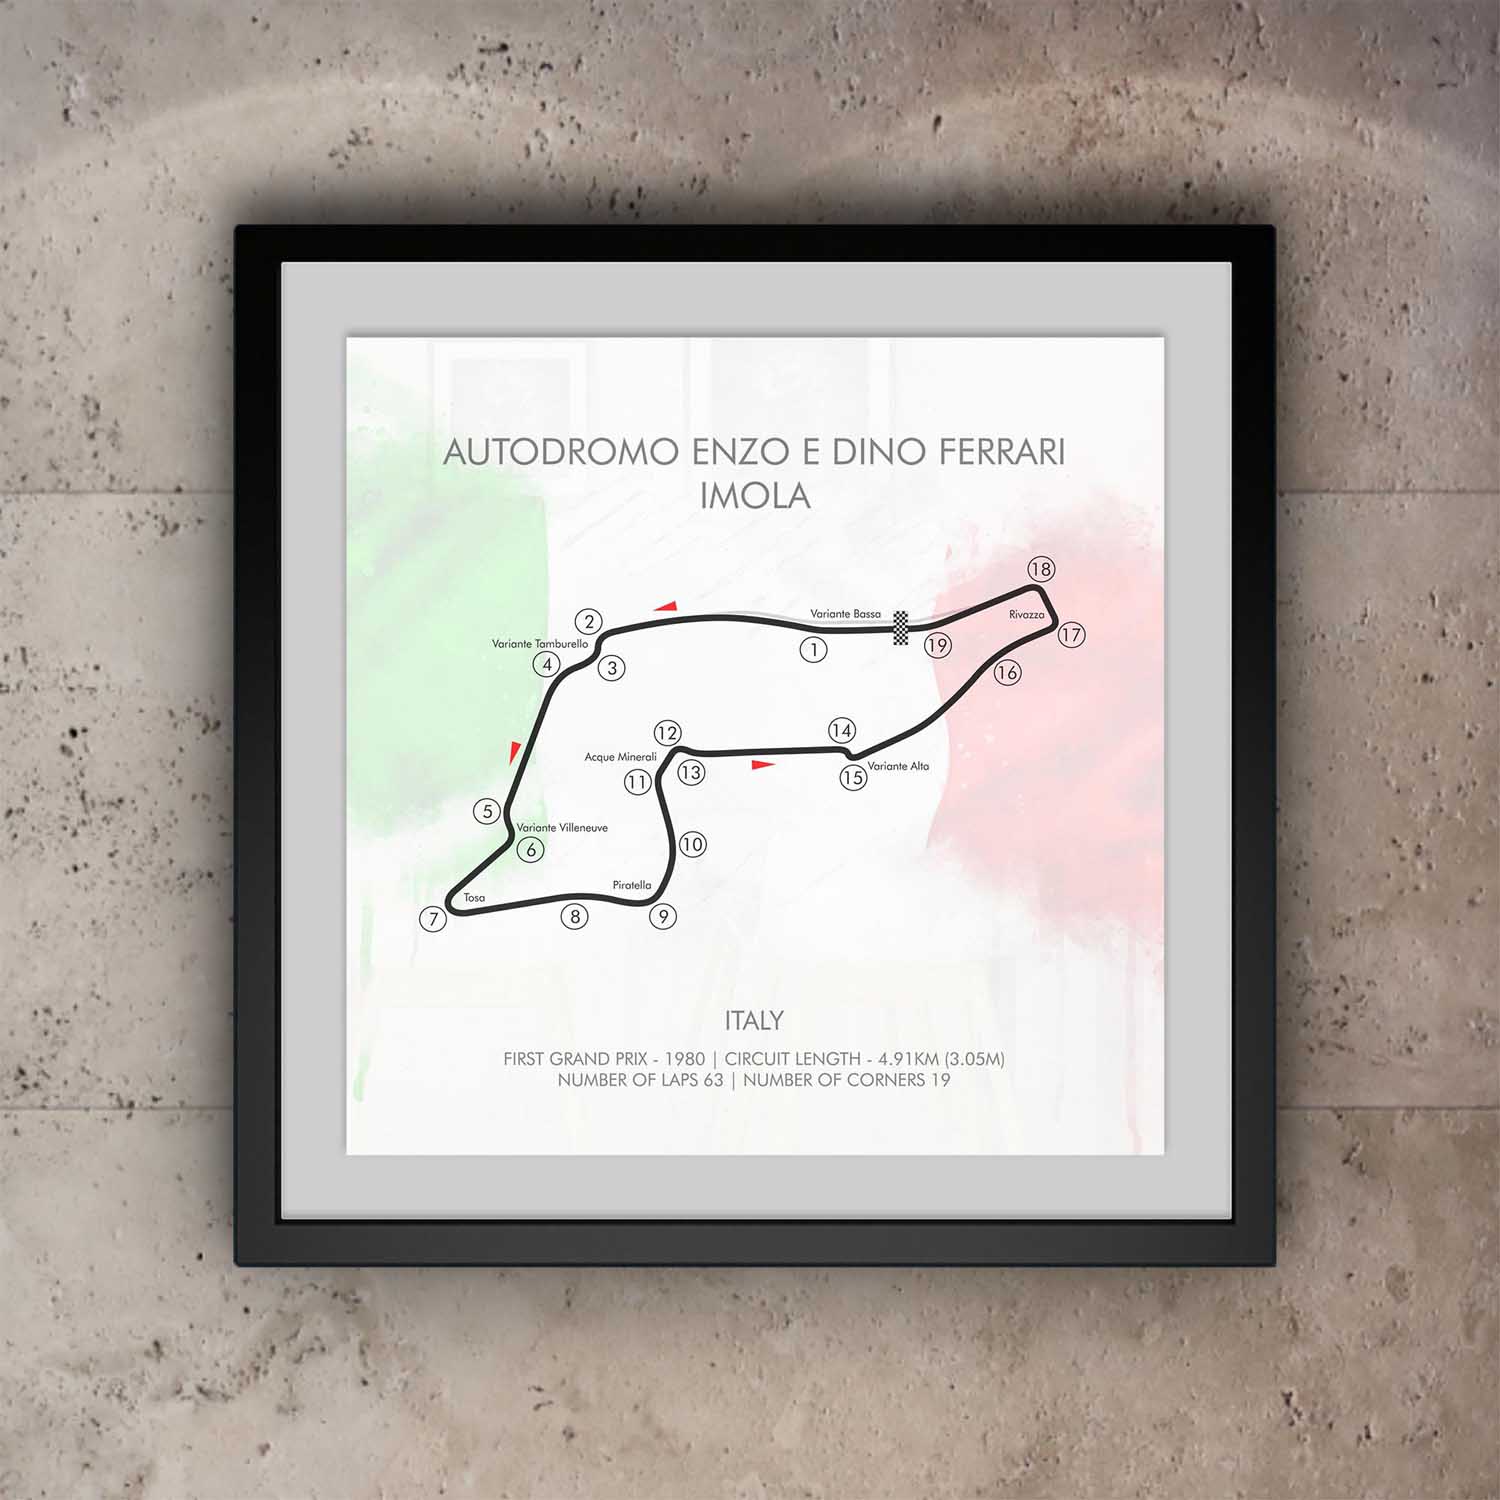 Imola Emilia Romagna Grand Prix Circuit